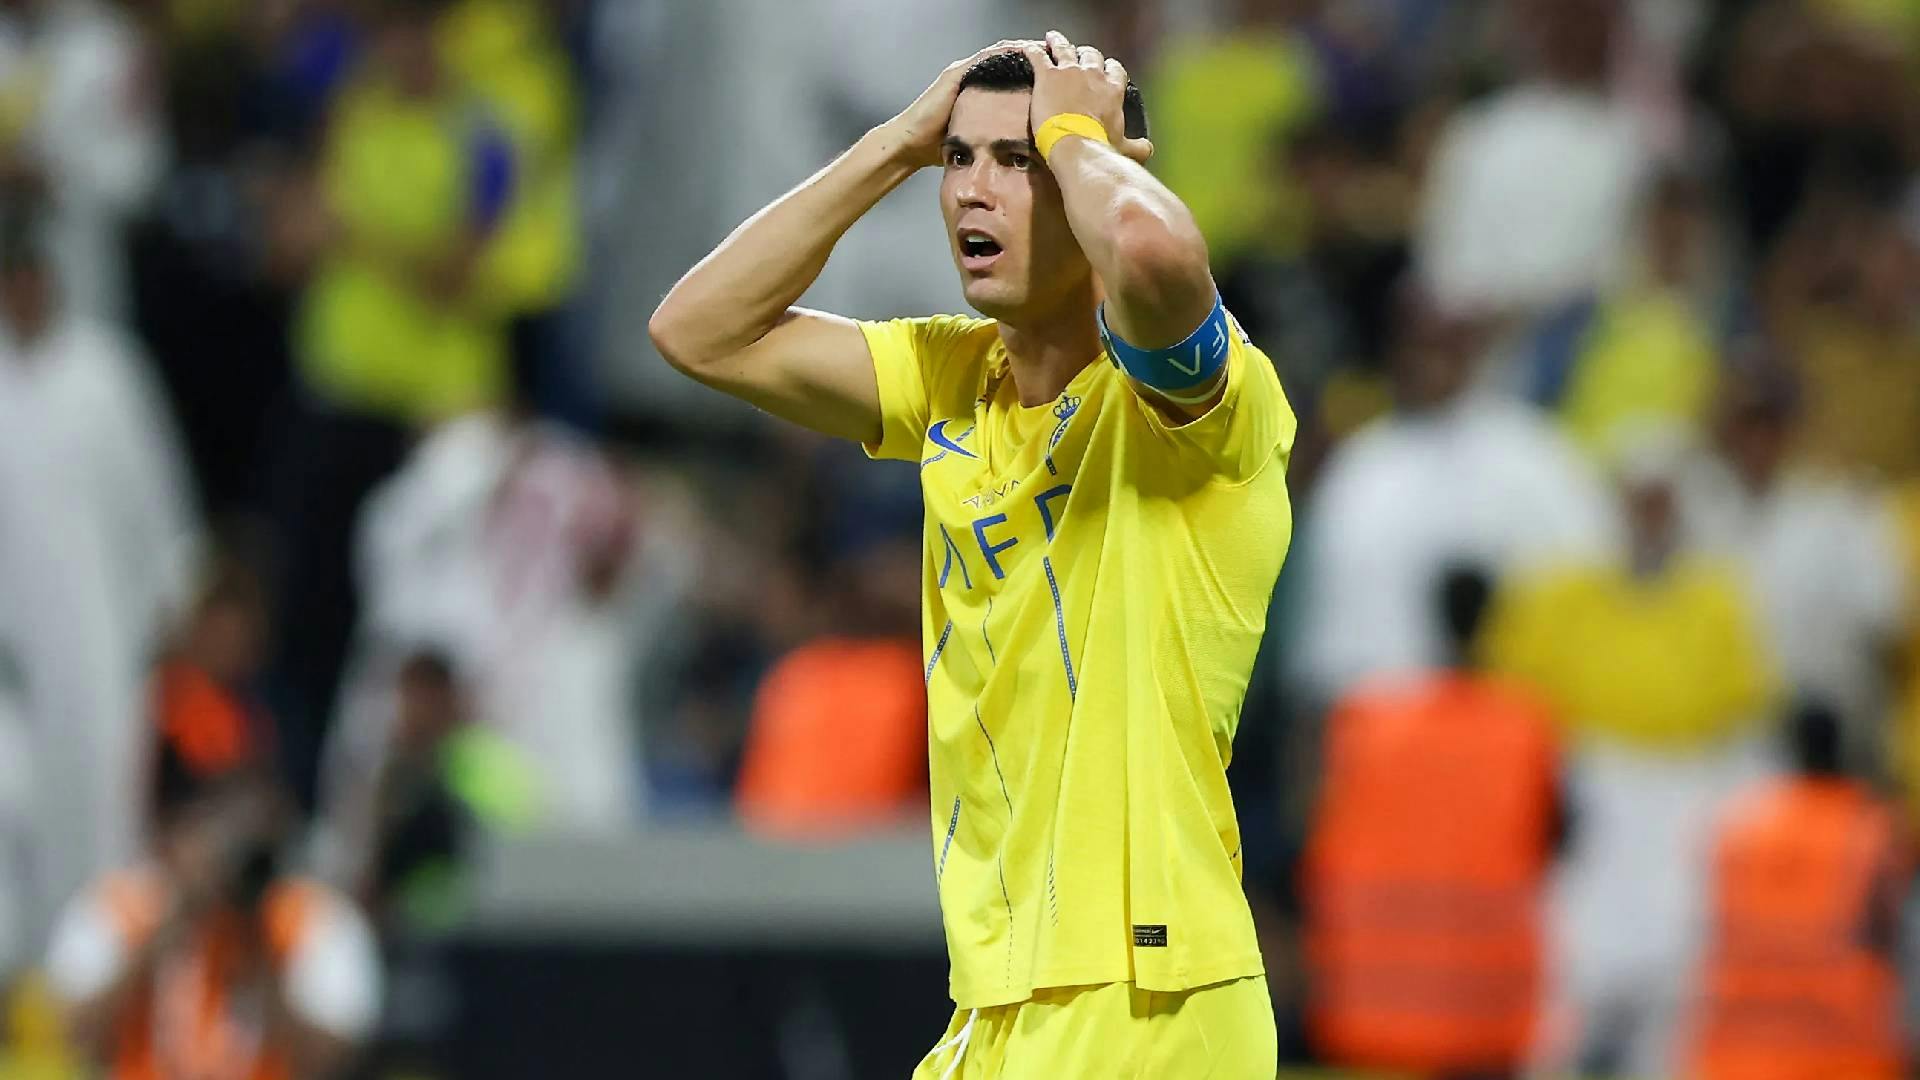 Ronaldo virale sui social, ma non per un gol: la sua punizione "decapita" un cameraman (VIDEO)